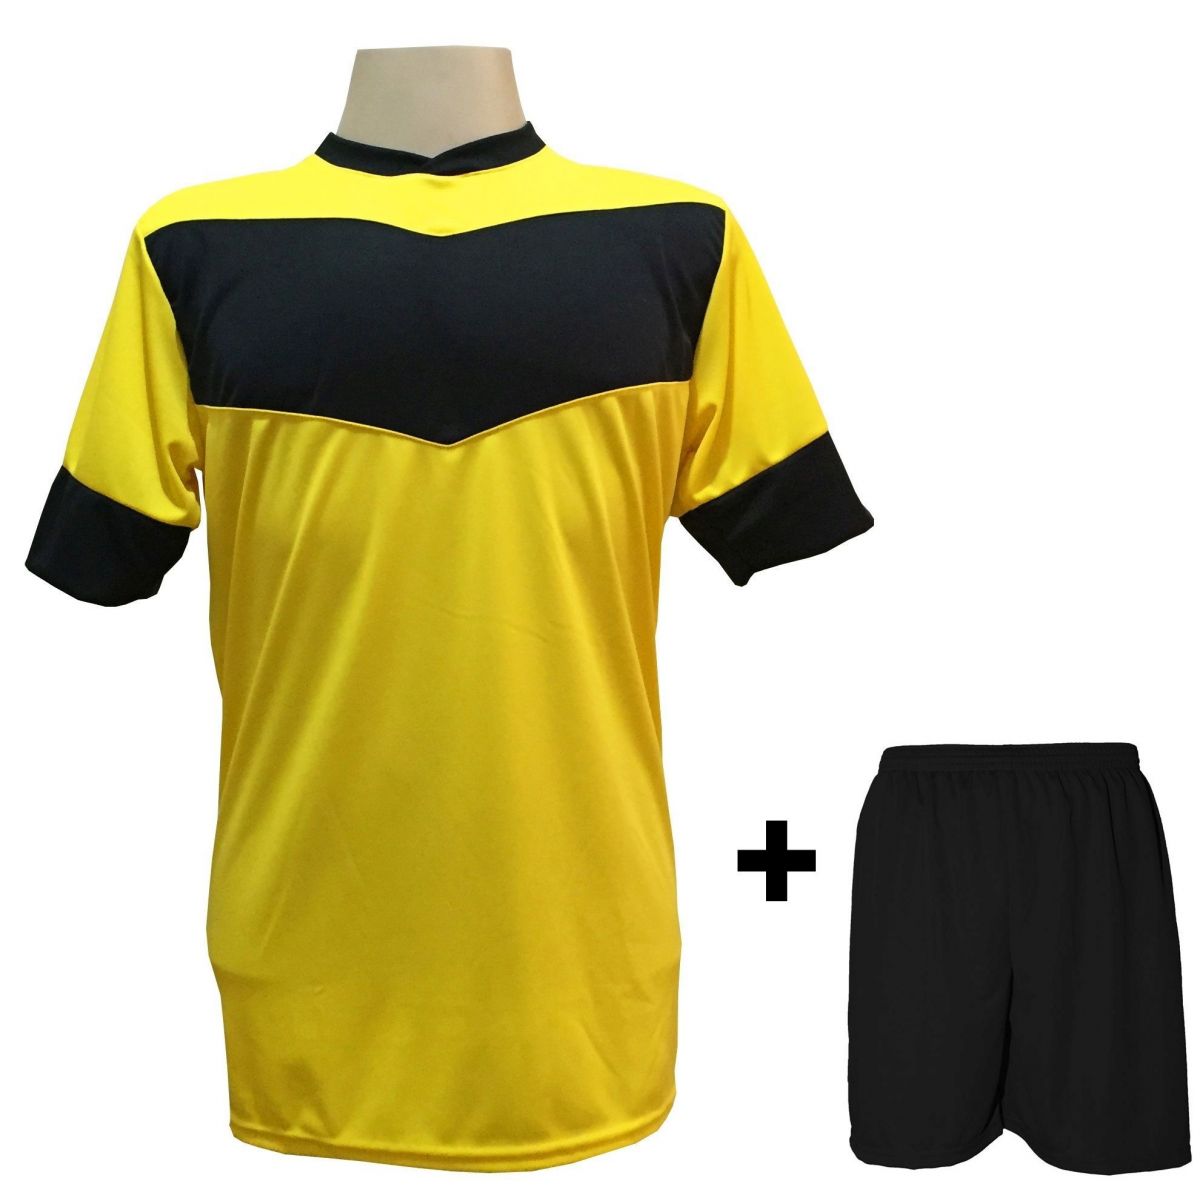 Uniforme Esportivo com 18 camisas modelo Columbus Amarelo/Preto + 18 calções modelo Madrid Preto + Brindes